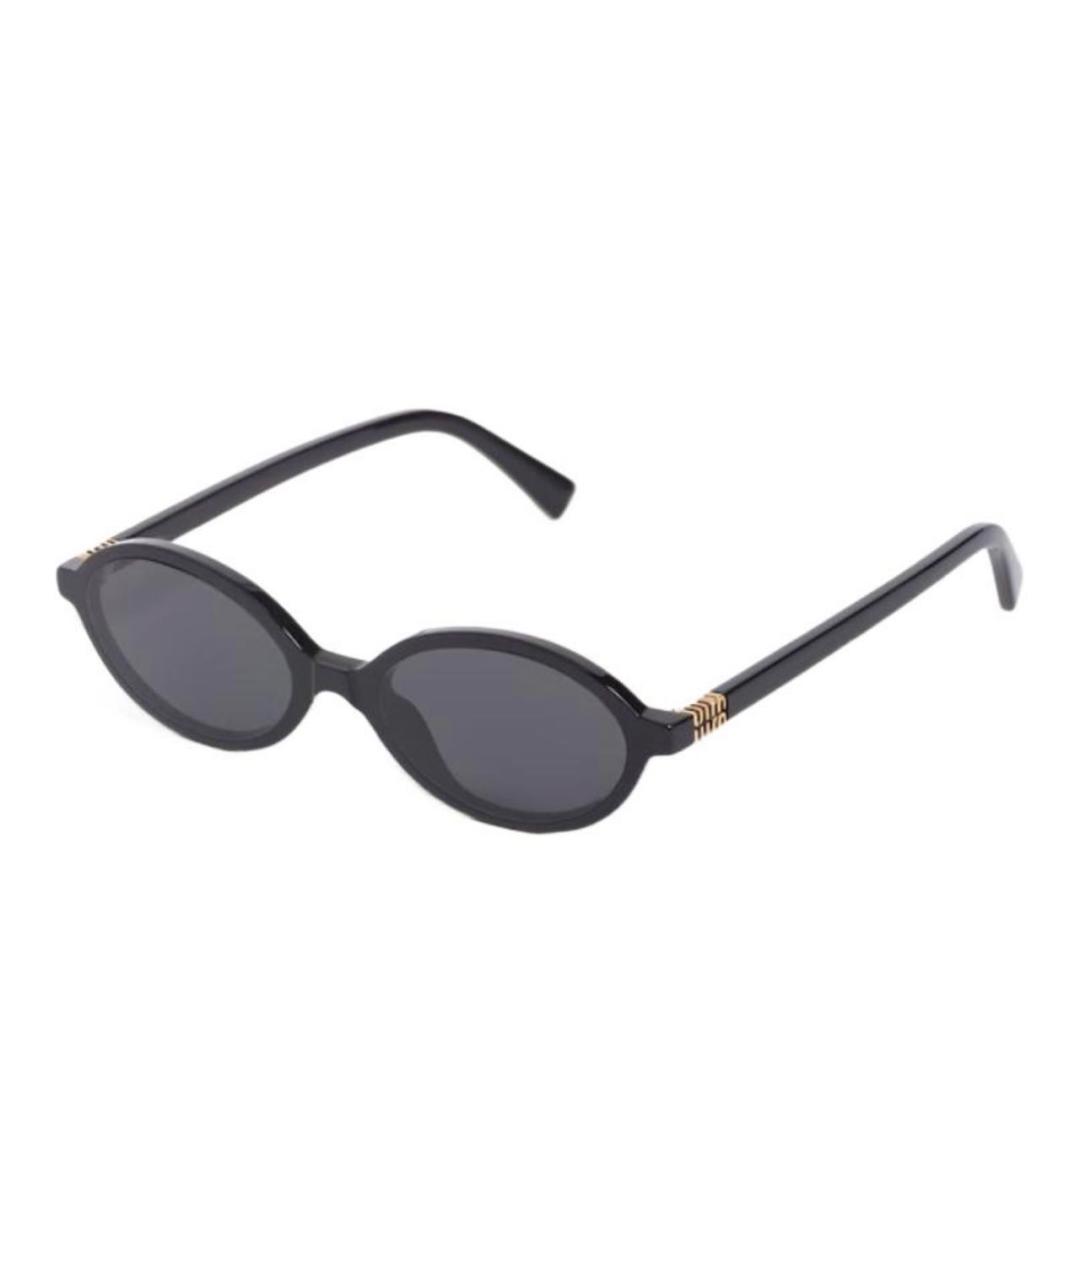 MIU MIU Черные солнцезащитные очки, фото 1